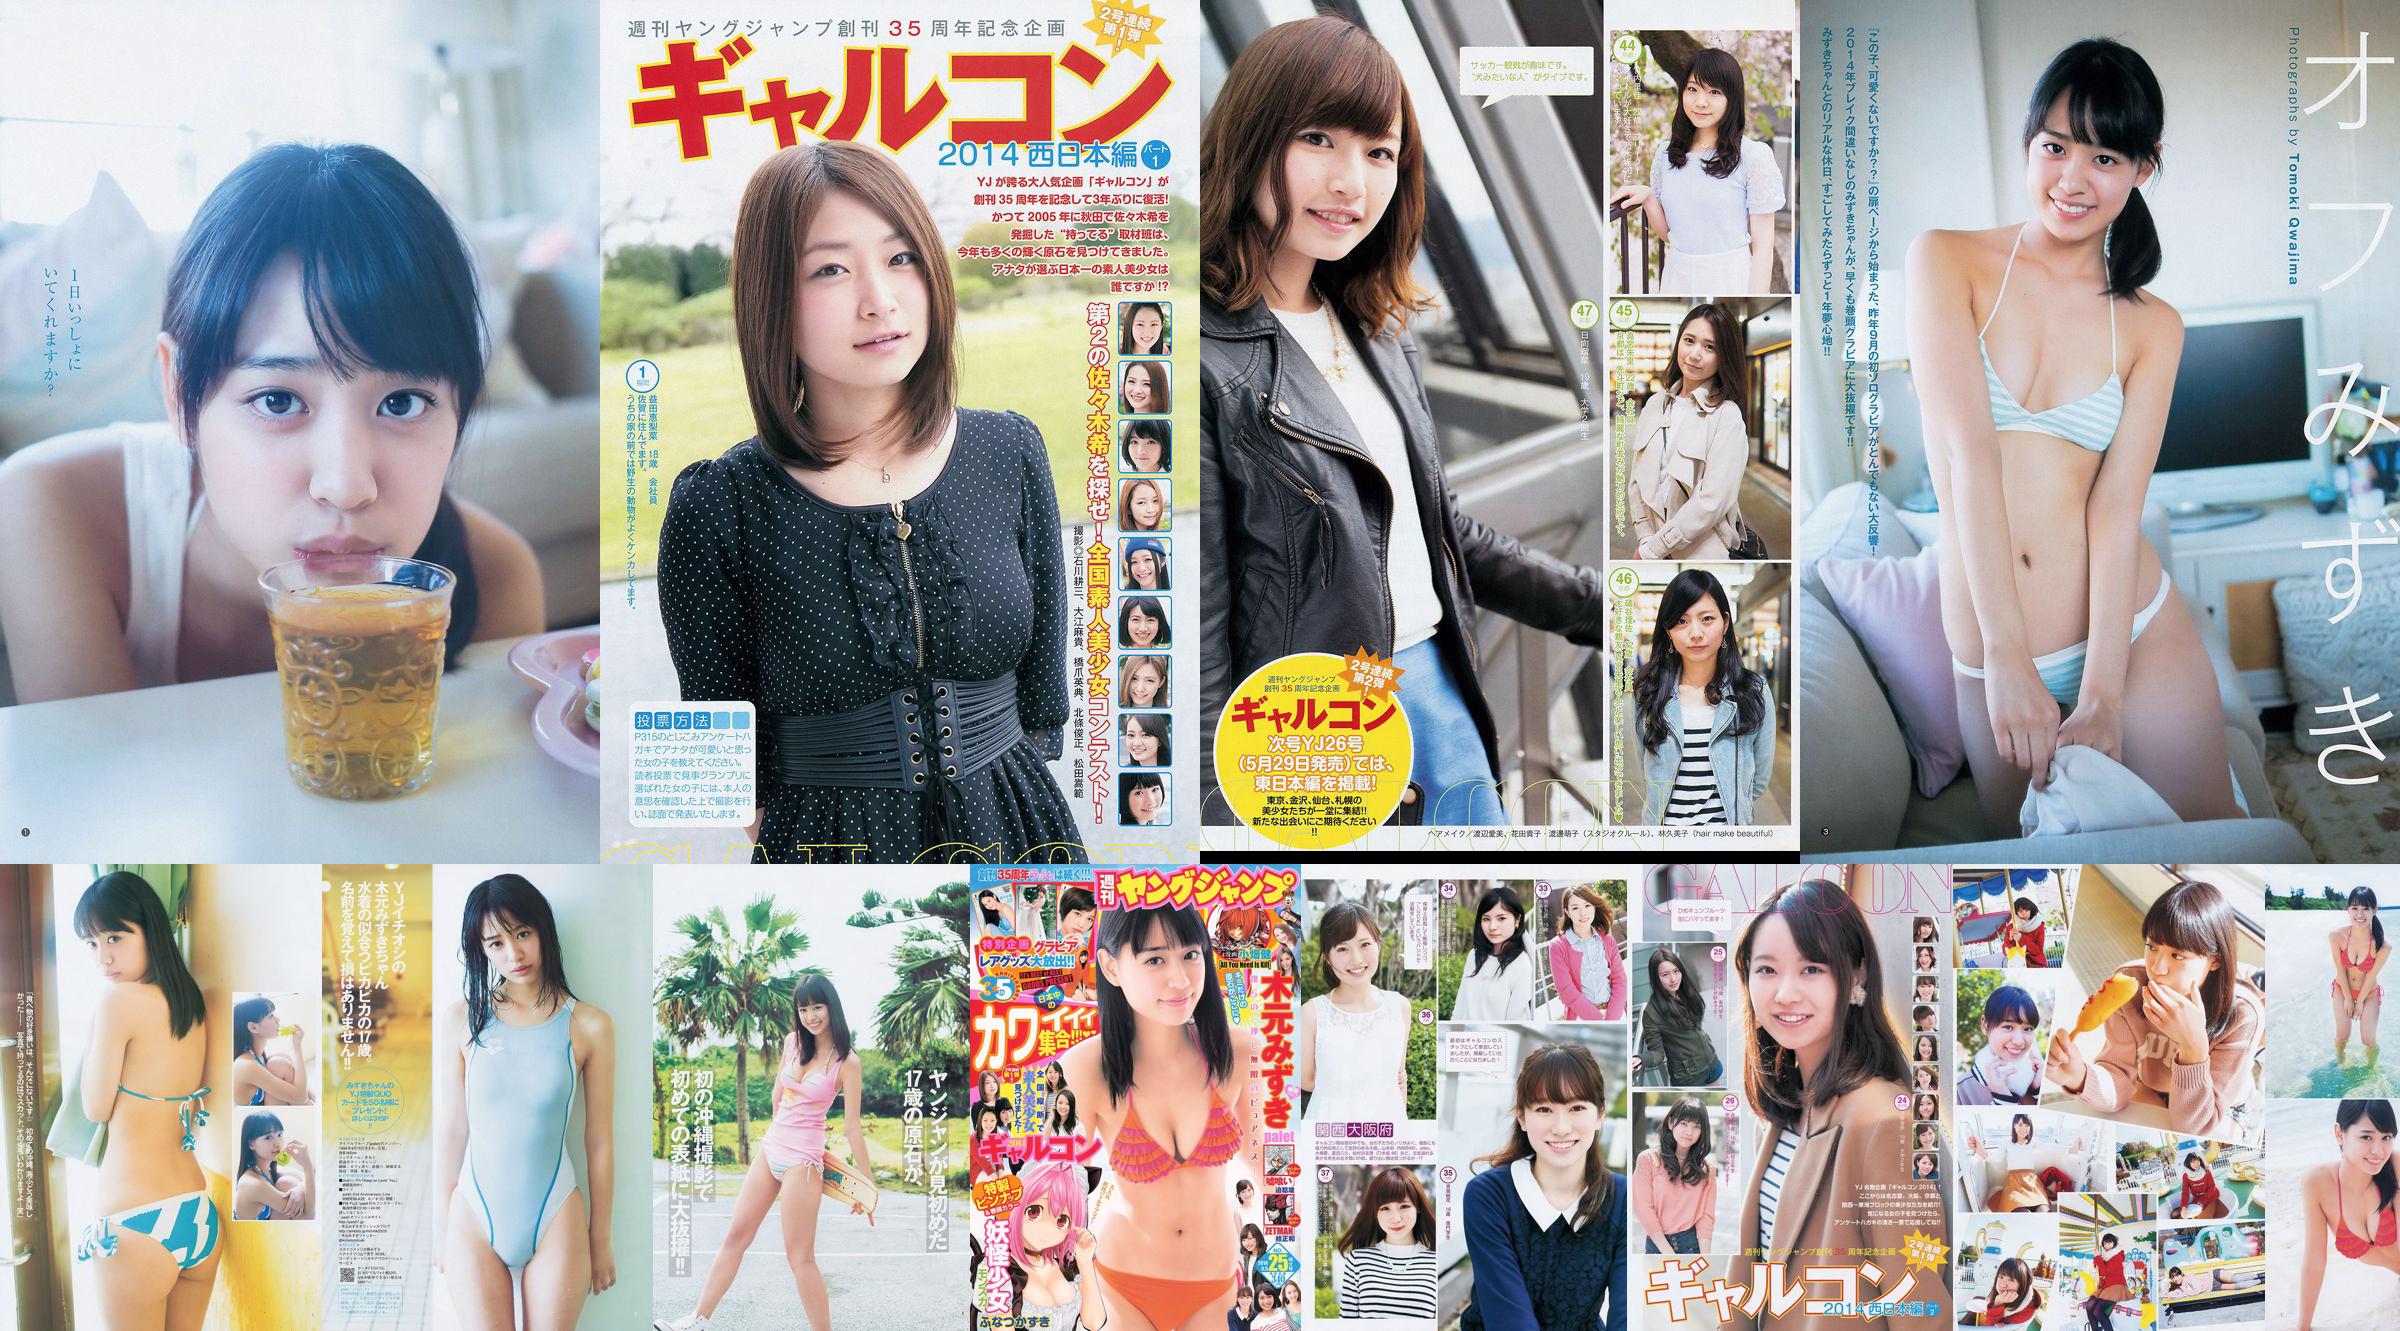 木元みずき 橋本真帆 [Weekly Young Jump] 2014年No.08 写真杂志 No.5b6b50 第1頁